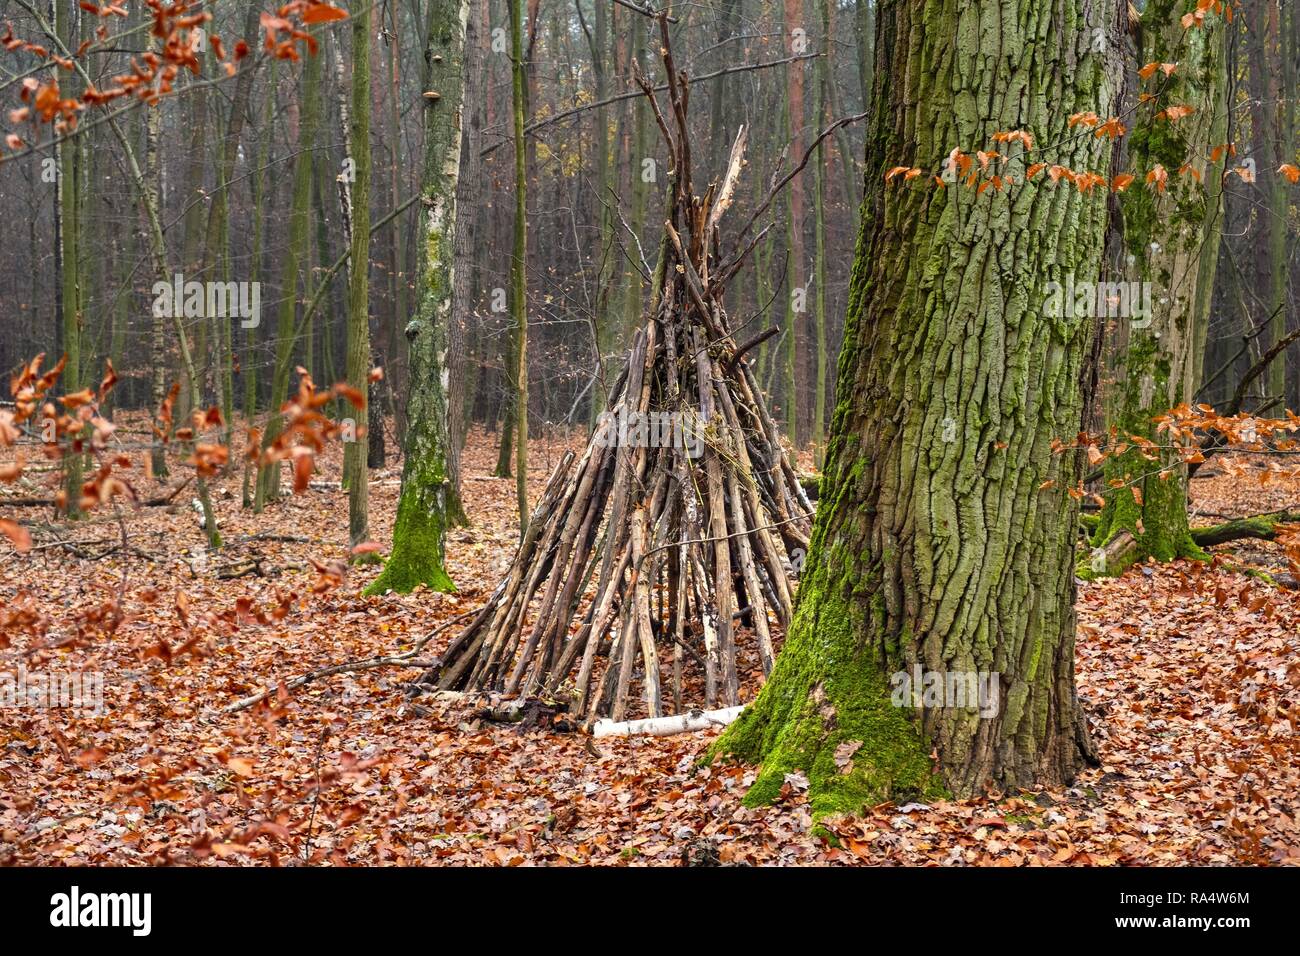 Paysage d'automne d'un bois brumeux et une cabane en bois dans la forêt Kabacki près de Varsovie, Pologne. Banque D'Images